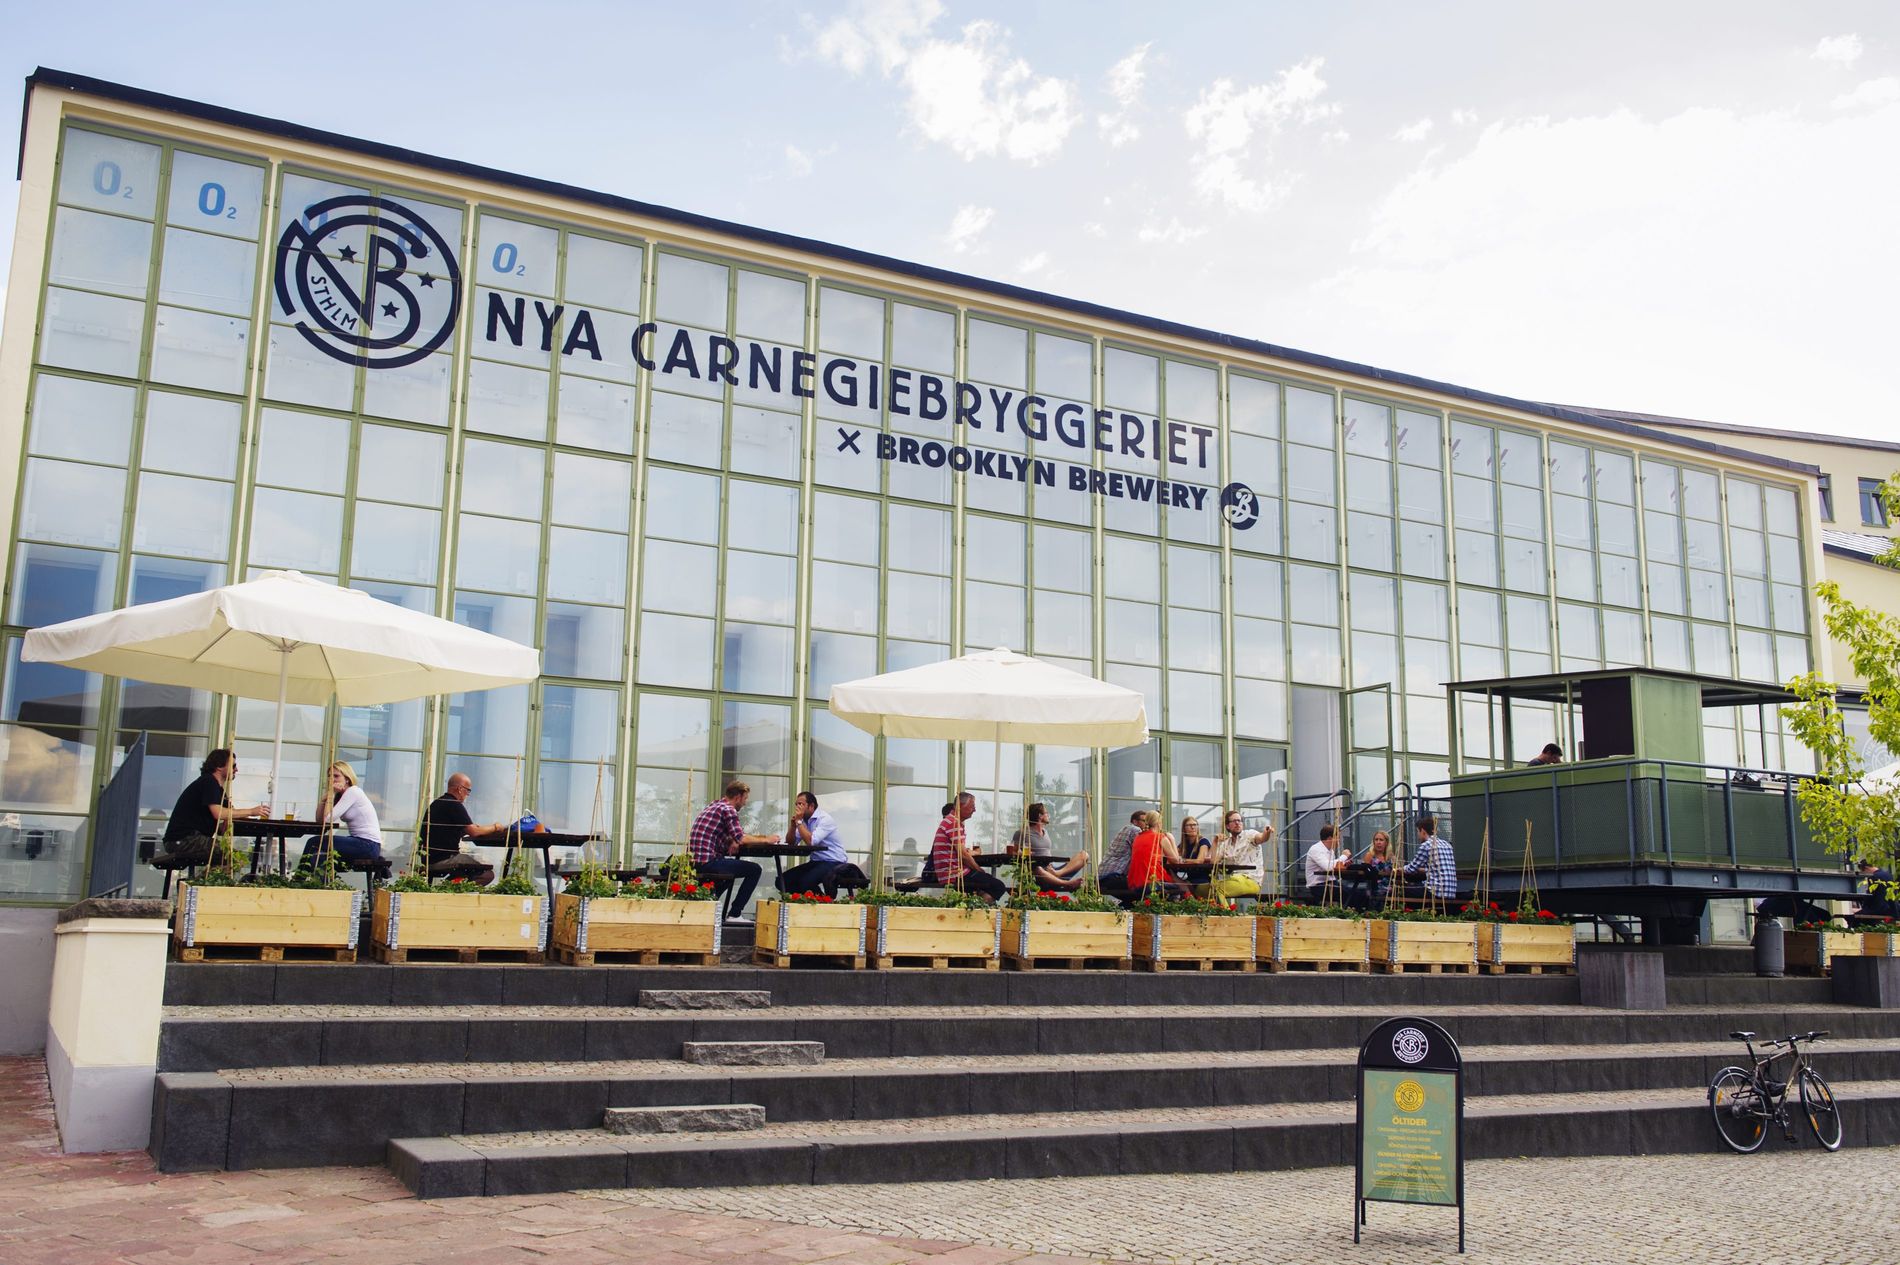 Nya Carnegiebryggeriet är ett bryggeri och restaurang i Stockholm.